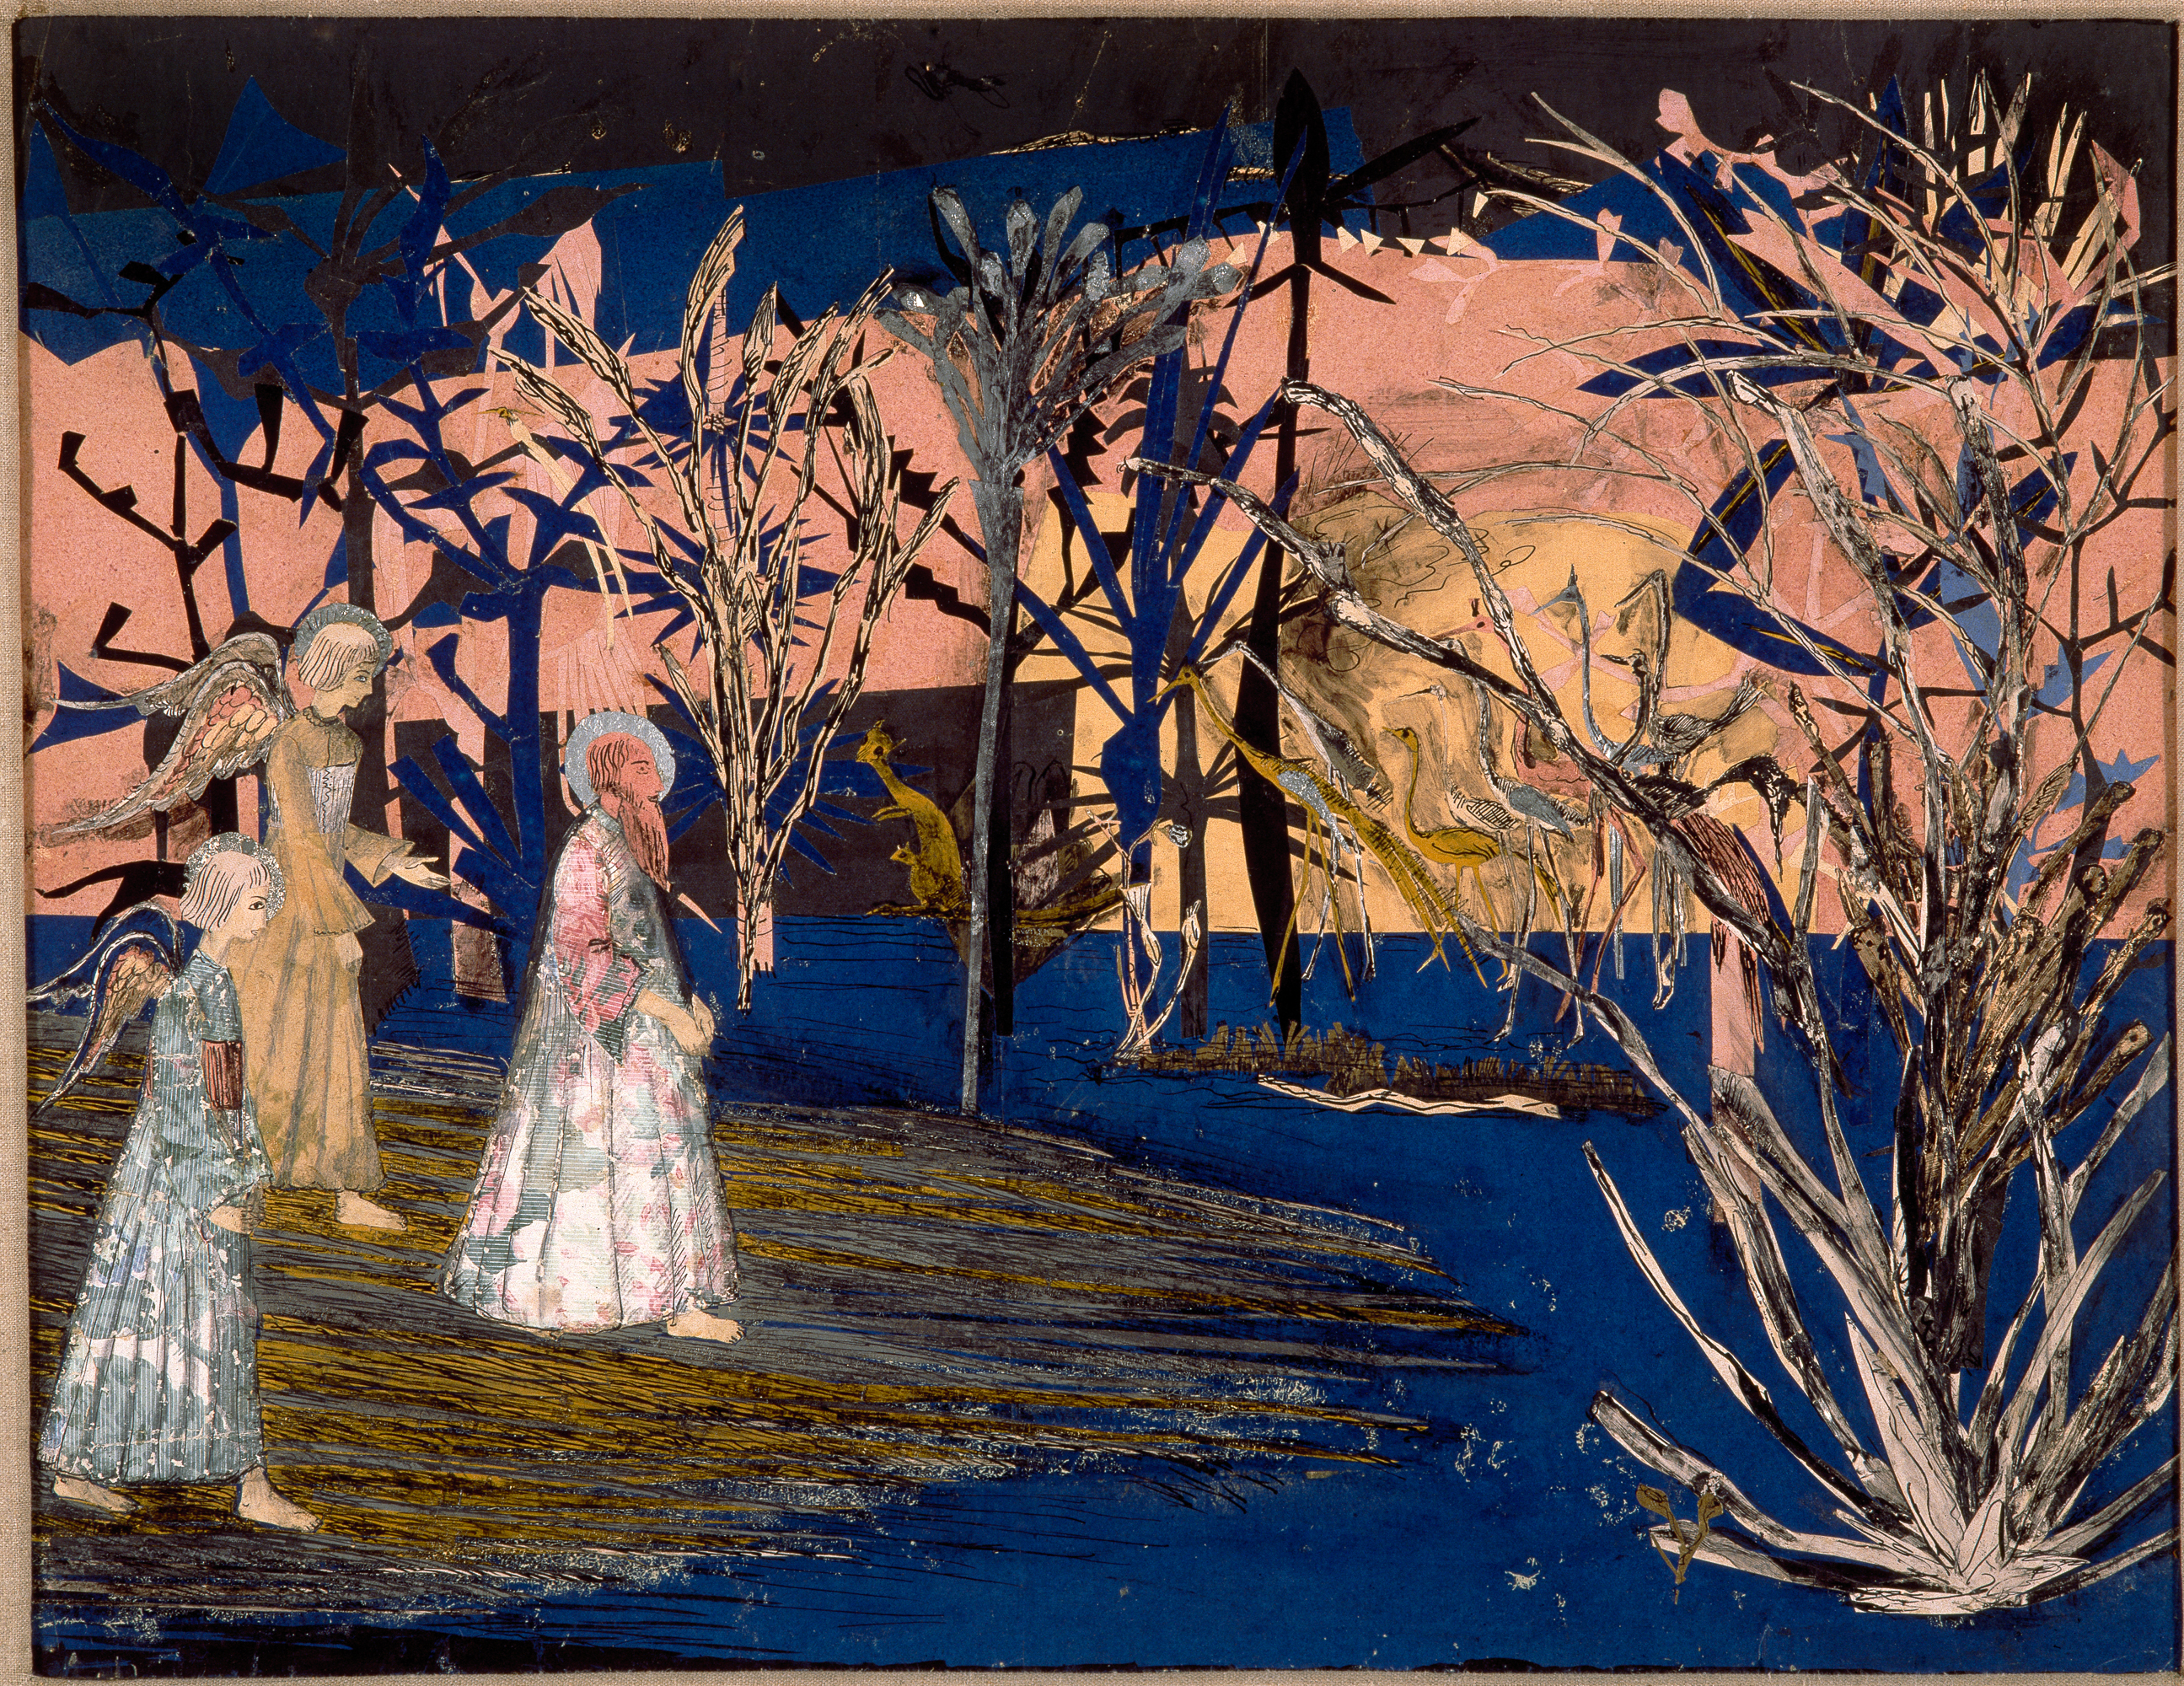 Sedmý den v ráji by Muggur (Guðmundur Pétursson Thorsteinsson) - 1920 - 47 x 61 cm 